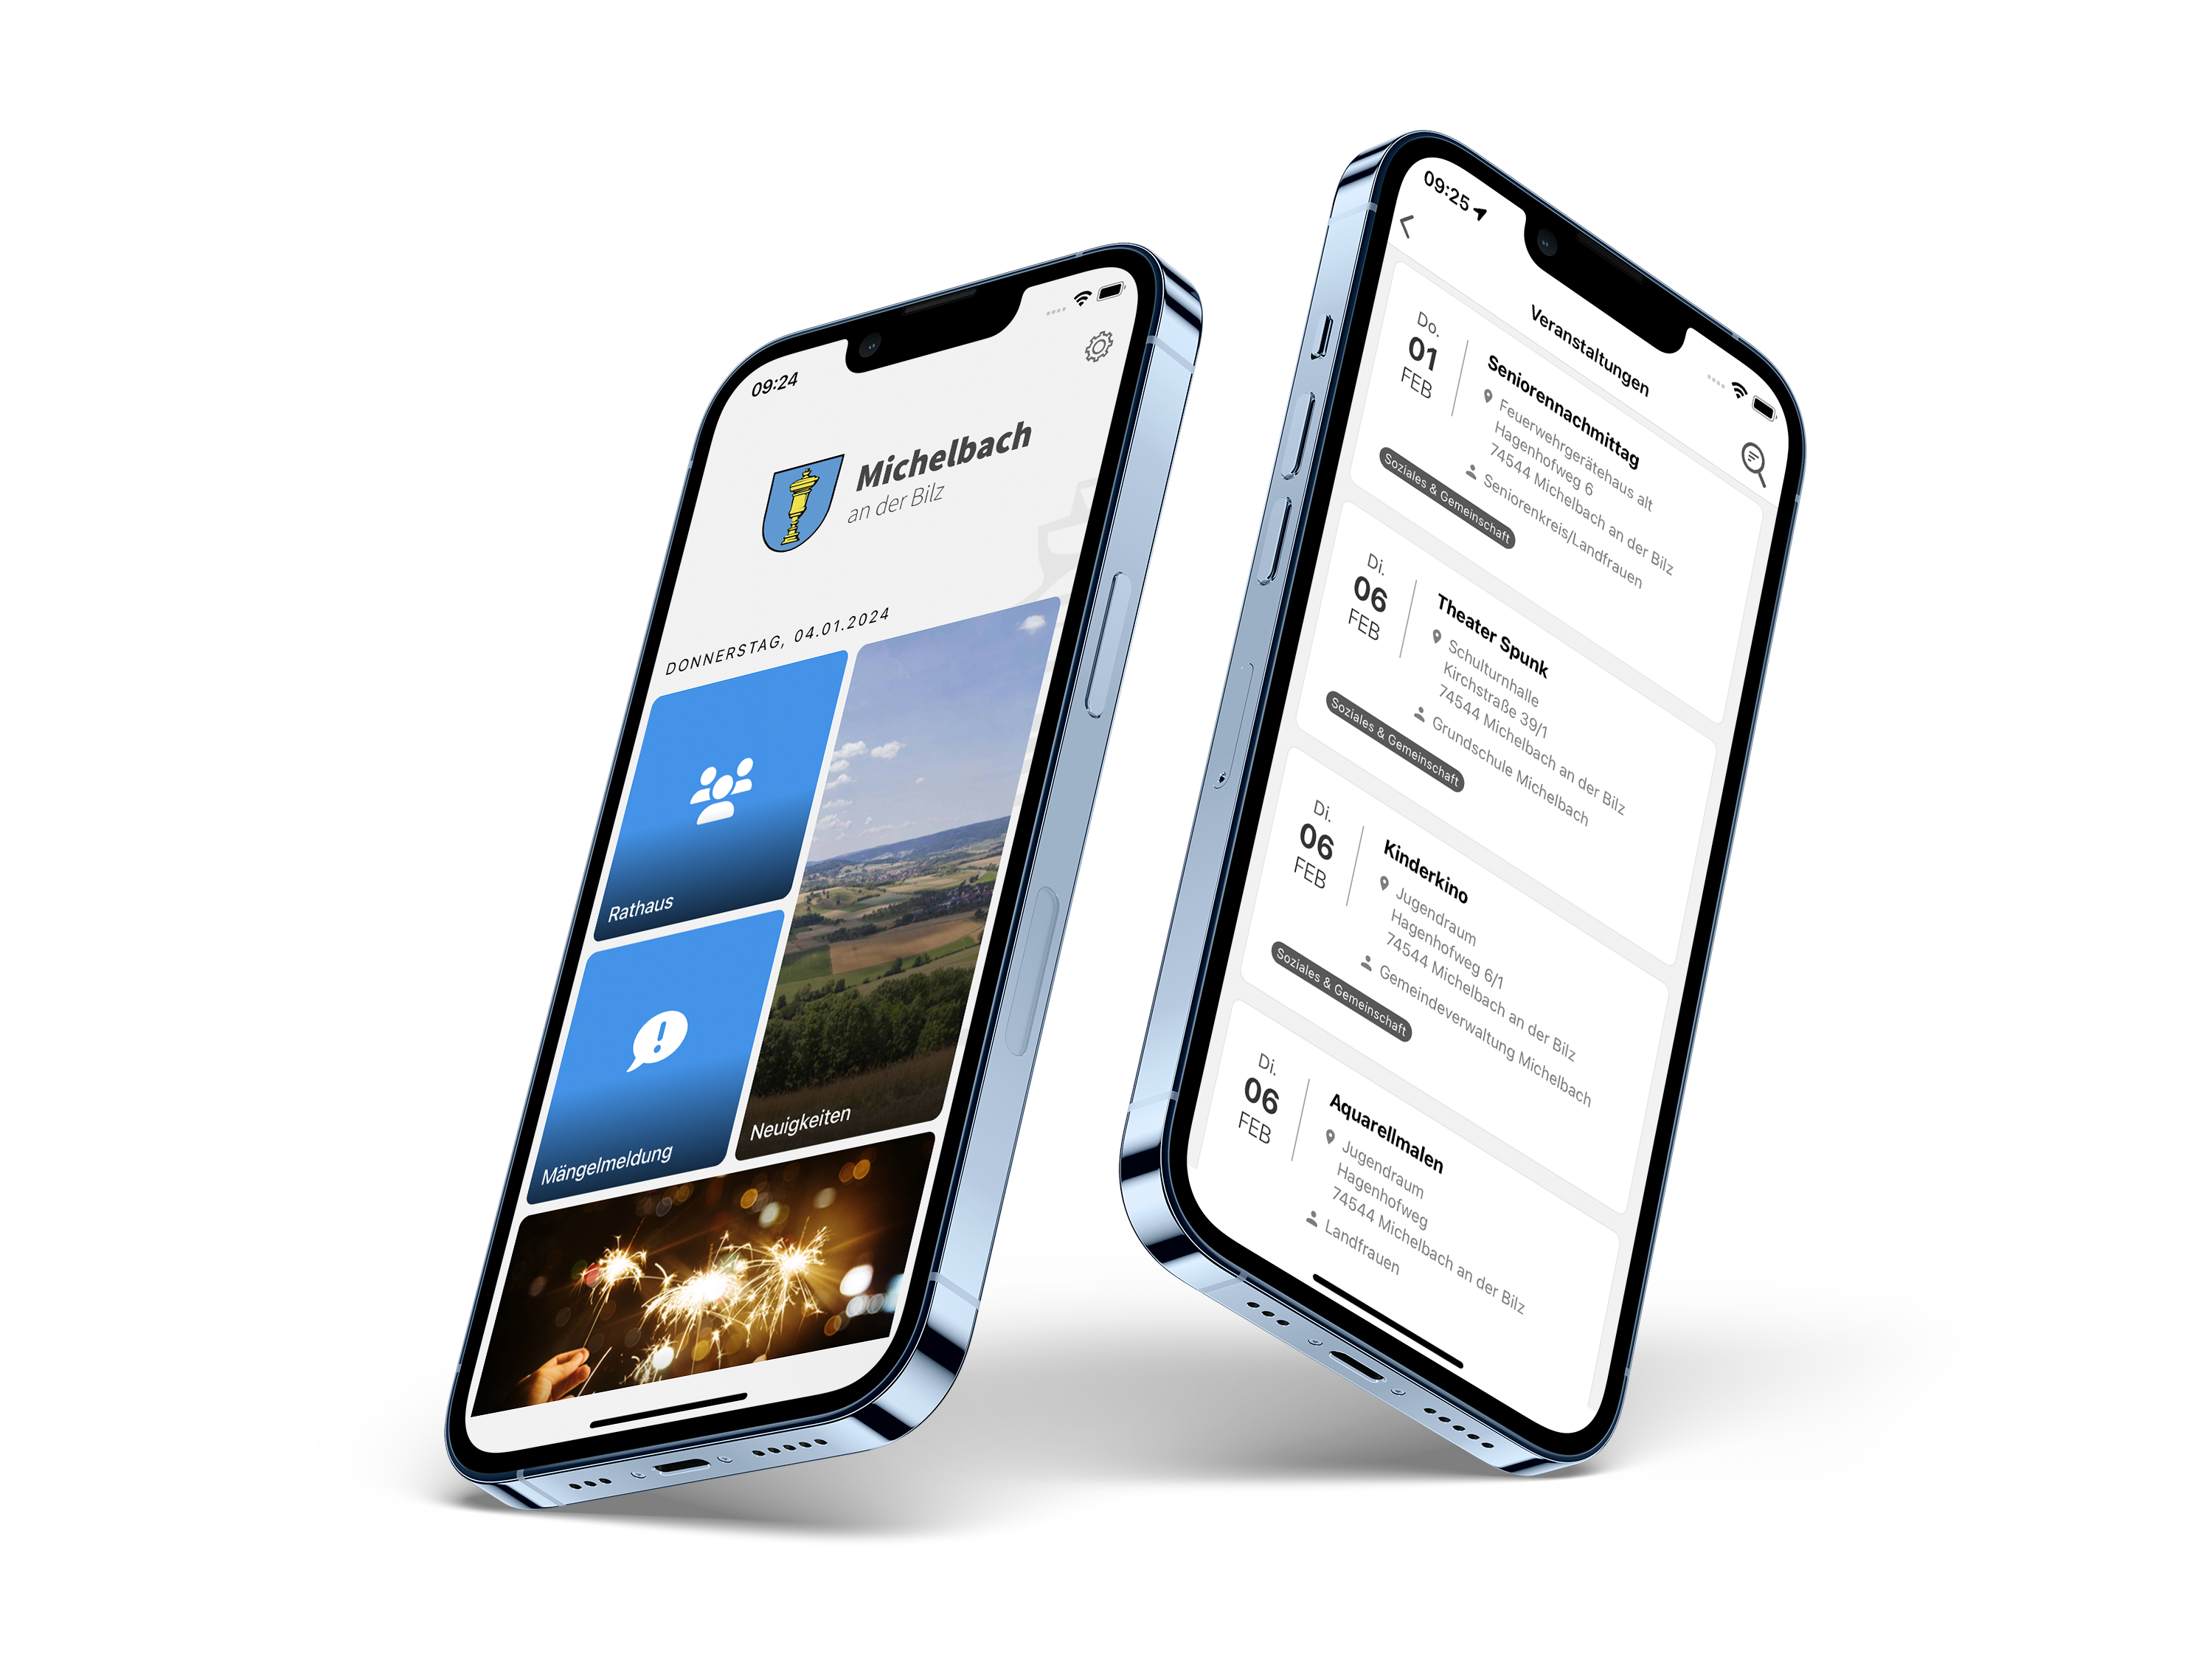  Zwei Handys auf denen das Vorschaubild der App Michelbach/Bilz gezeigt wird 